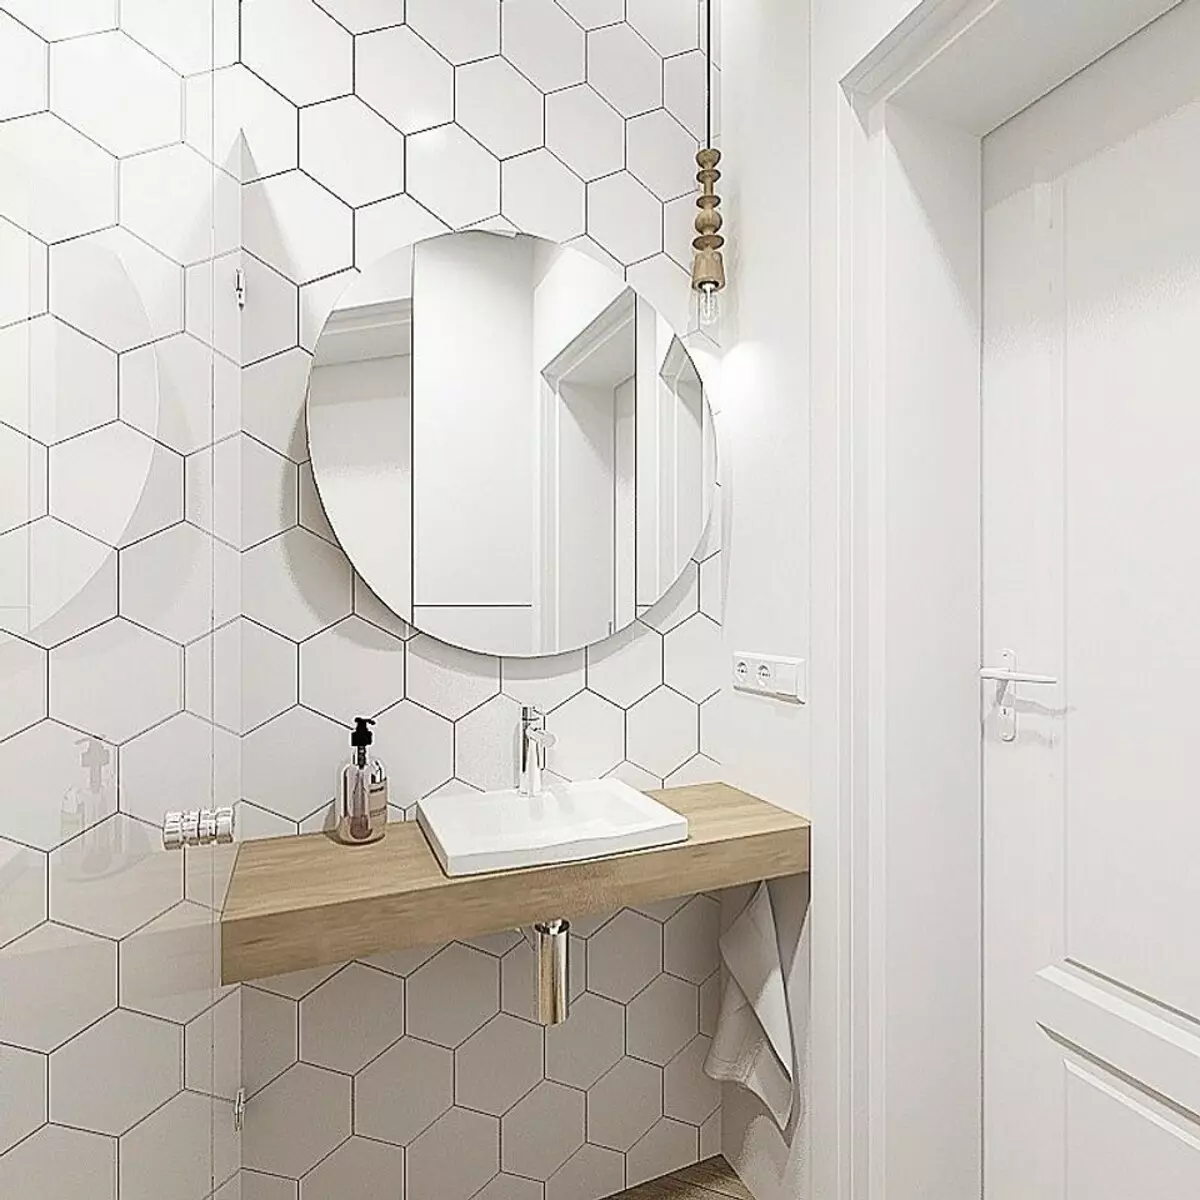 Sådan arrangerer du et badeværelse i skandinavisk stil: 8 enkle trin 10358_5